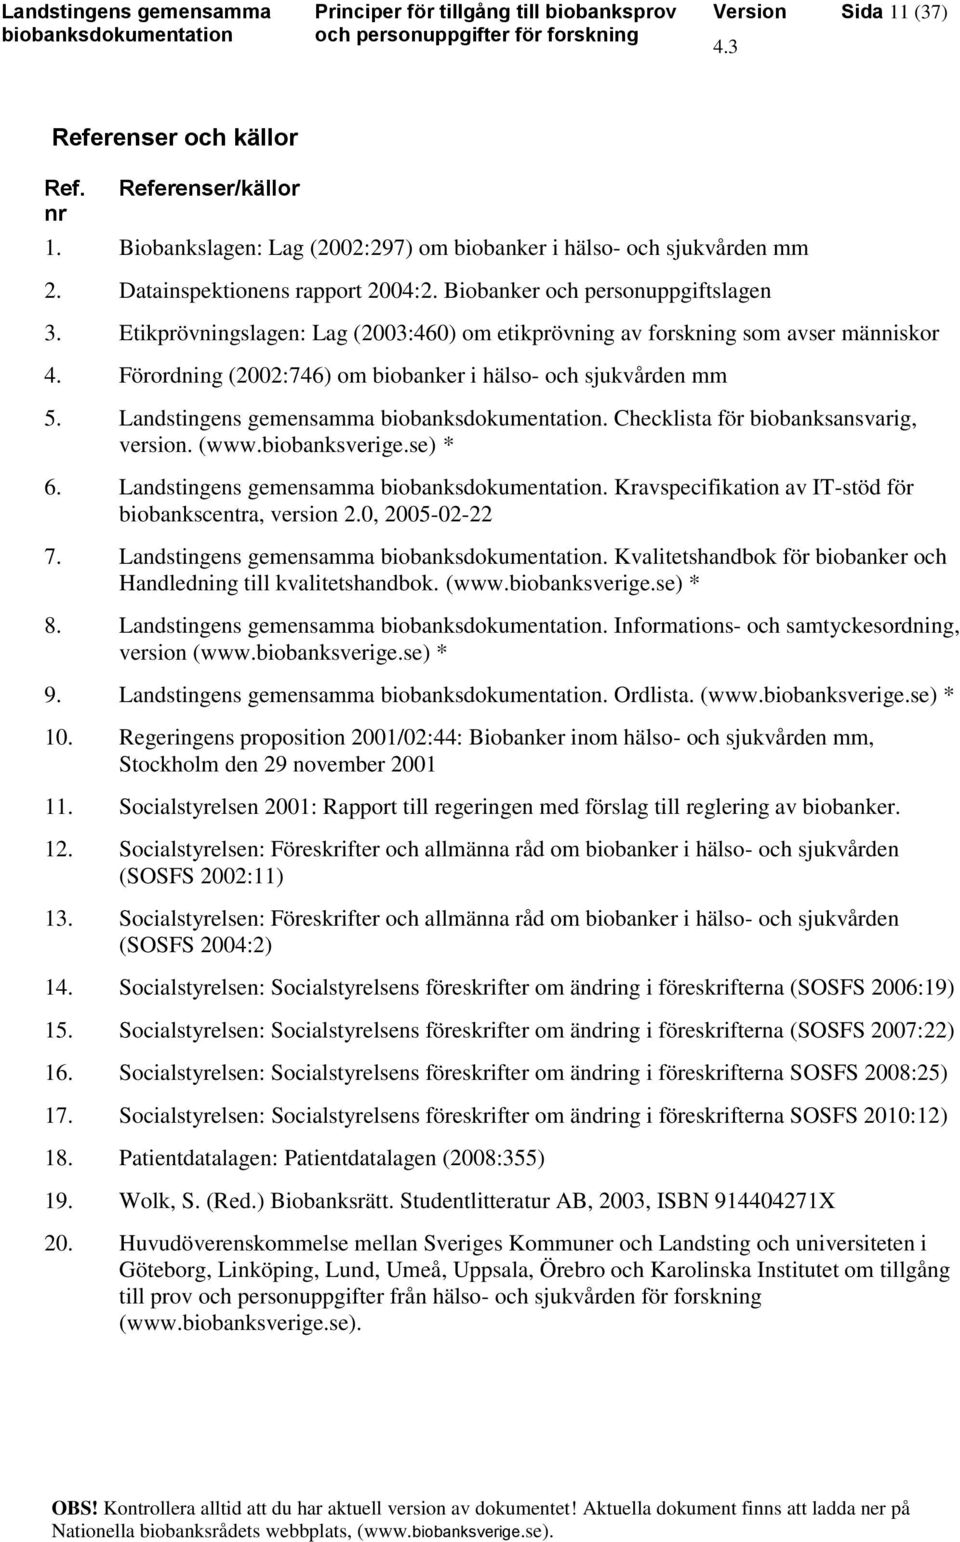 Landstingens gemensamma. Checklista för biobanksansvarig, version. (www.biobanksverige.se) * 6. Landstingens gemensamma. Kravspecifikation av IT-stöd för biobankscentra, version 2.0, 2005-02-22 7.